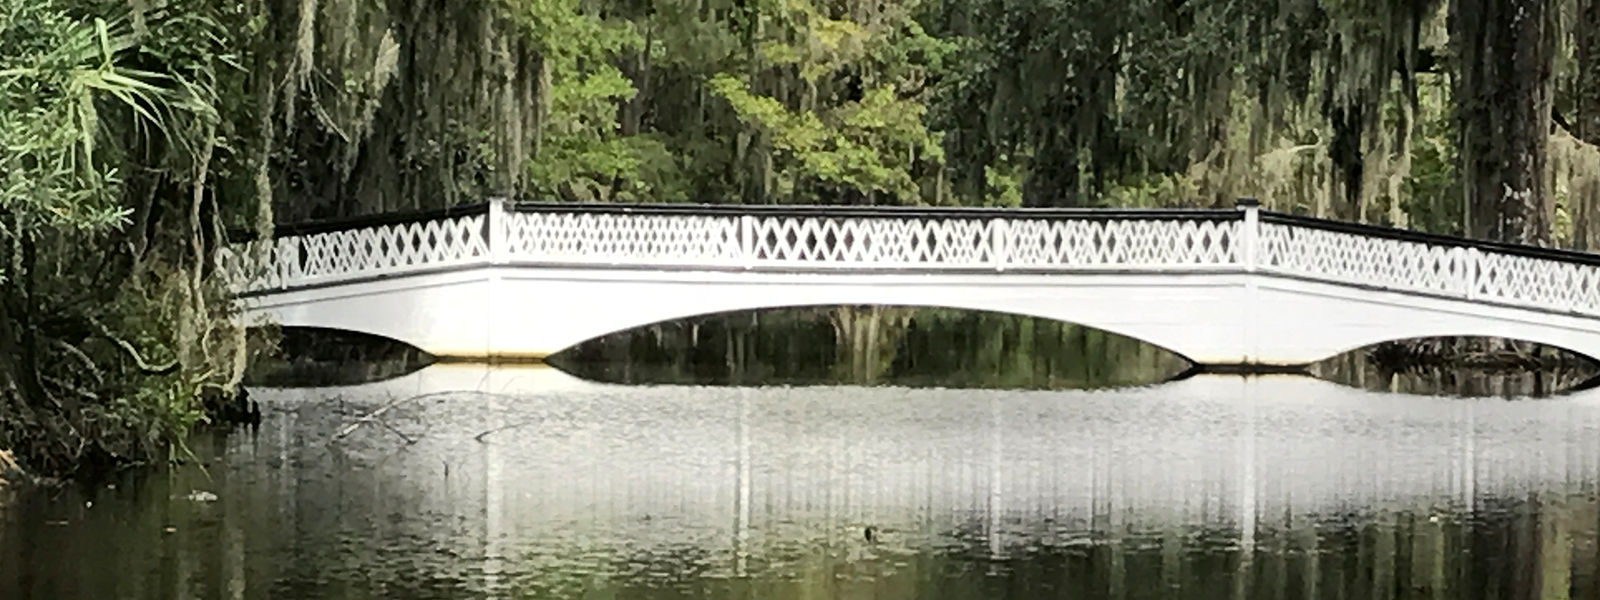 Magnolia Bridge